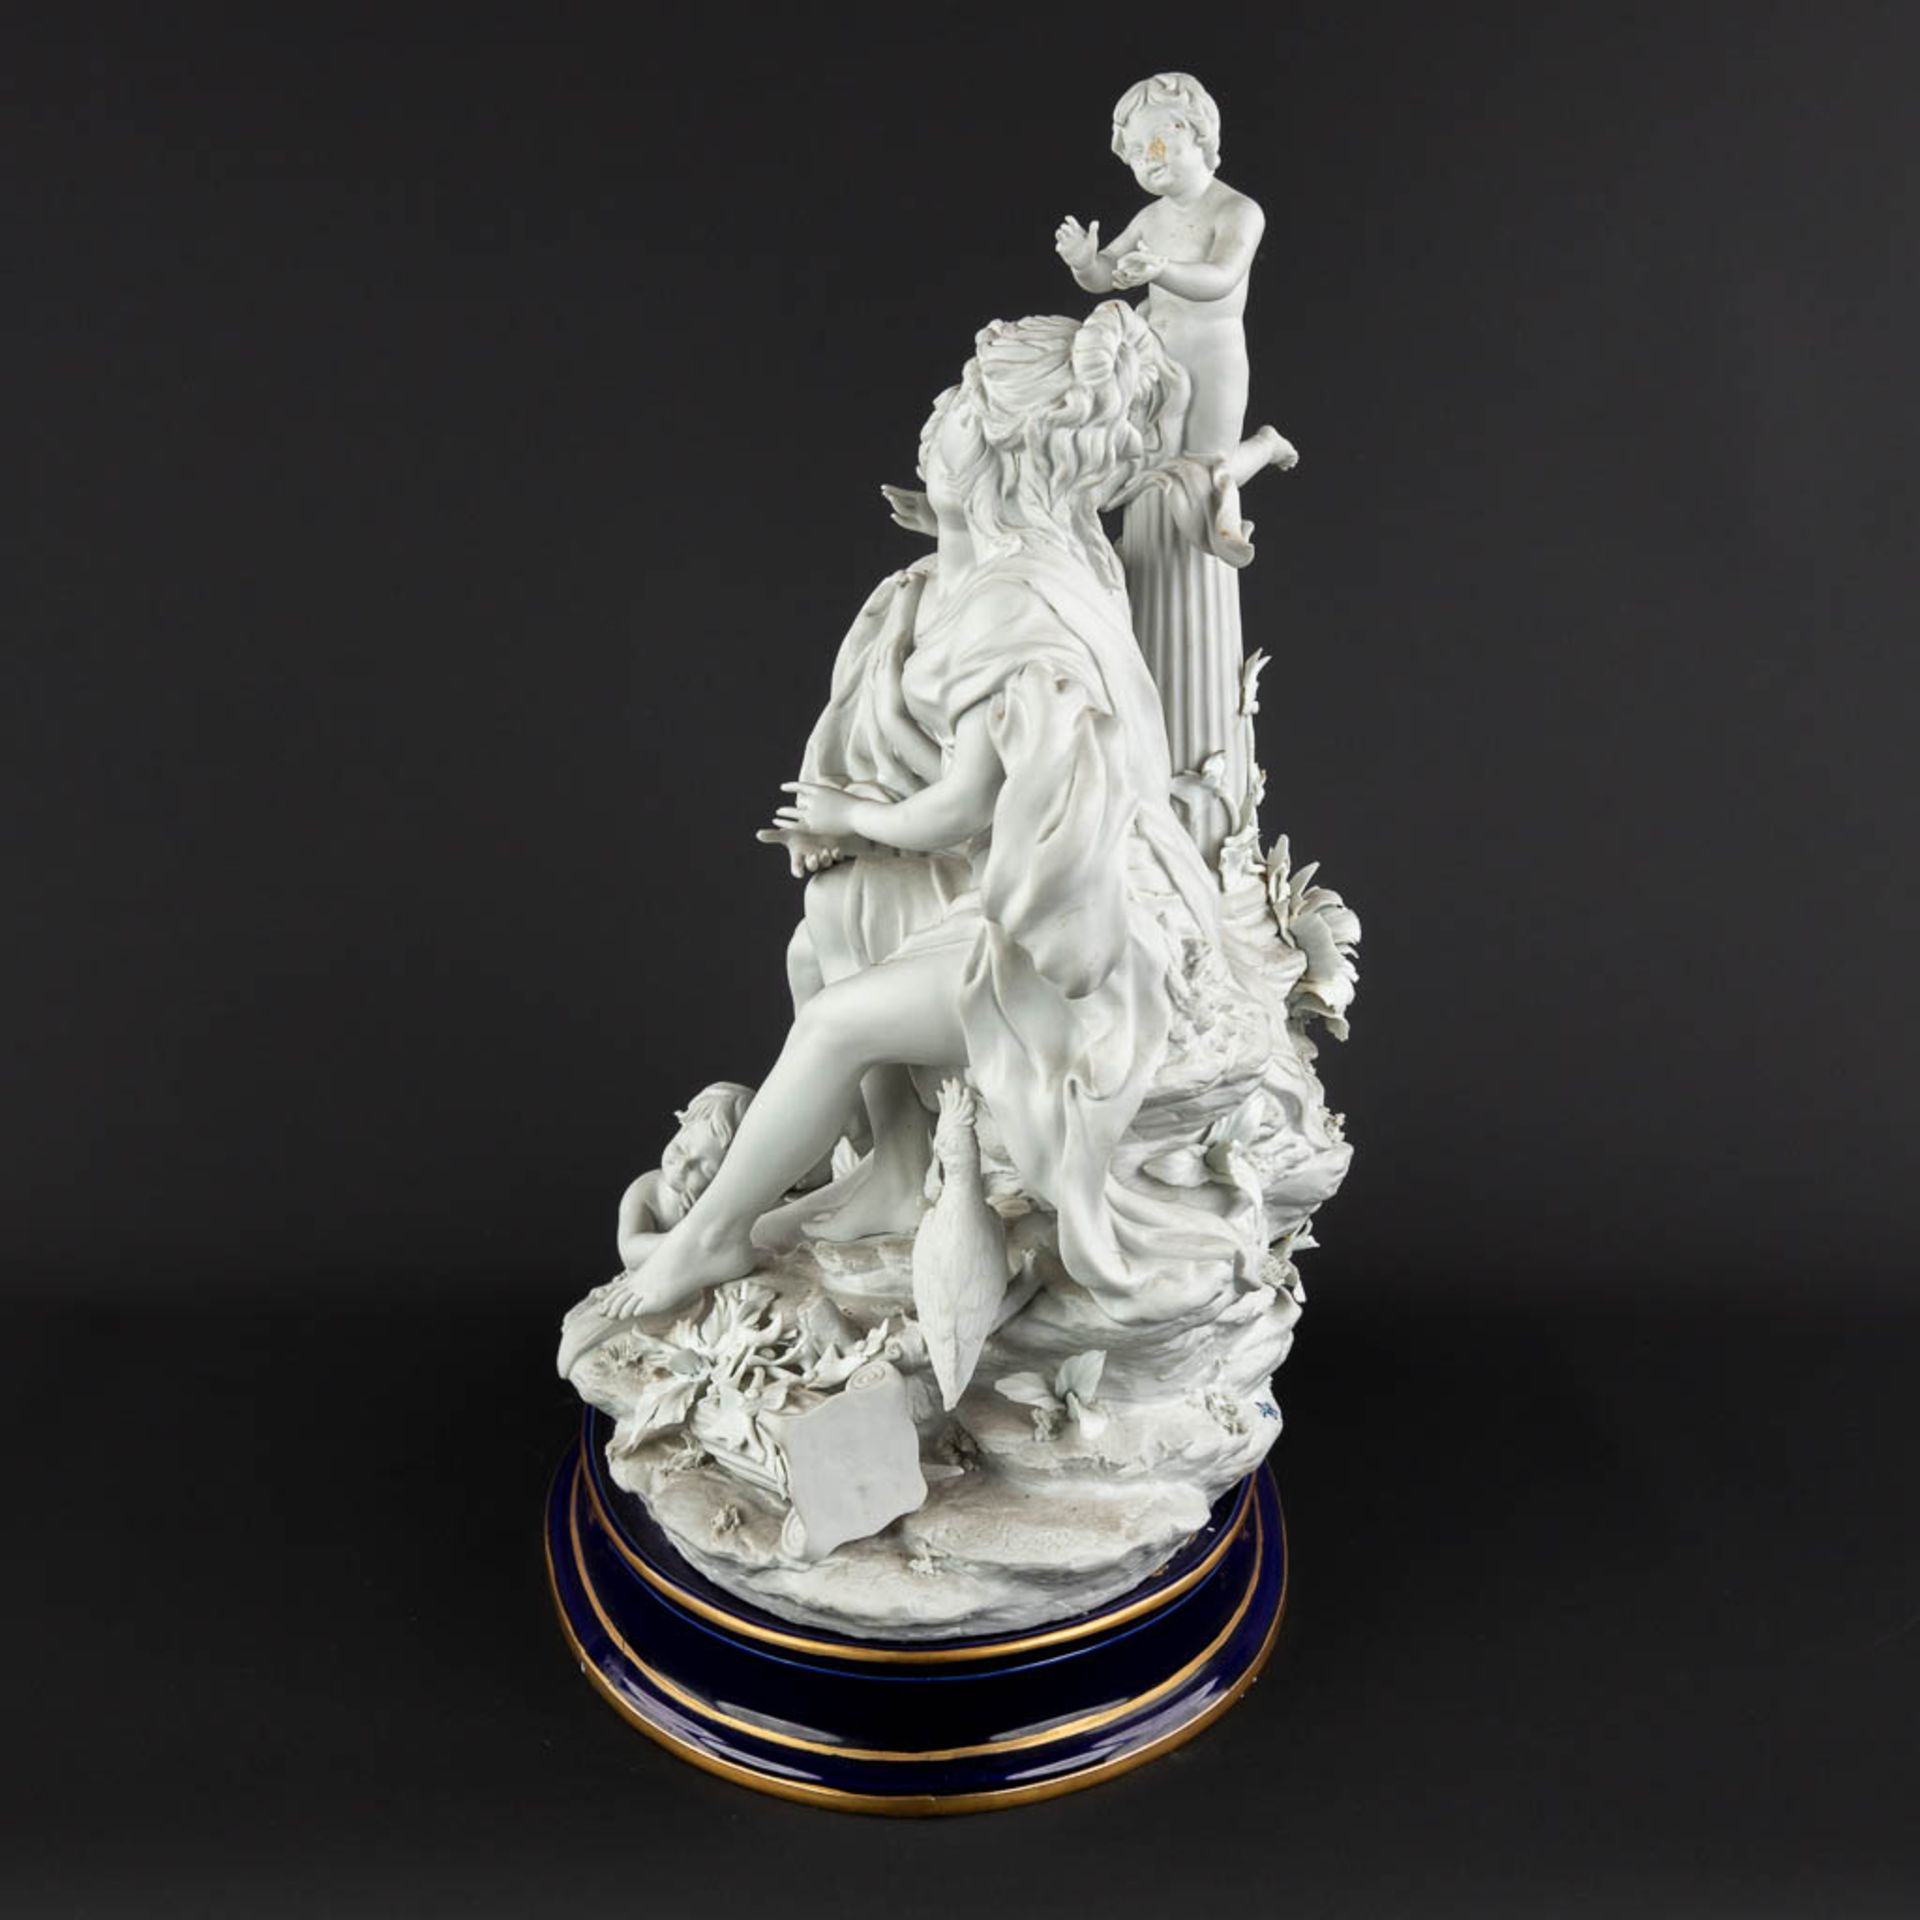 A large group, bisque porcelain with a romantic scène. 20th C. (D:26 x W:36 x H:47 cm) - Image 6 of 18